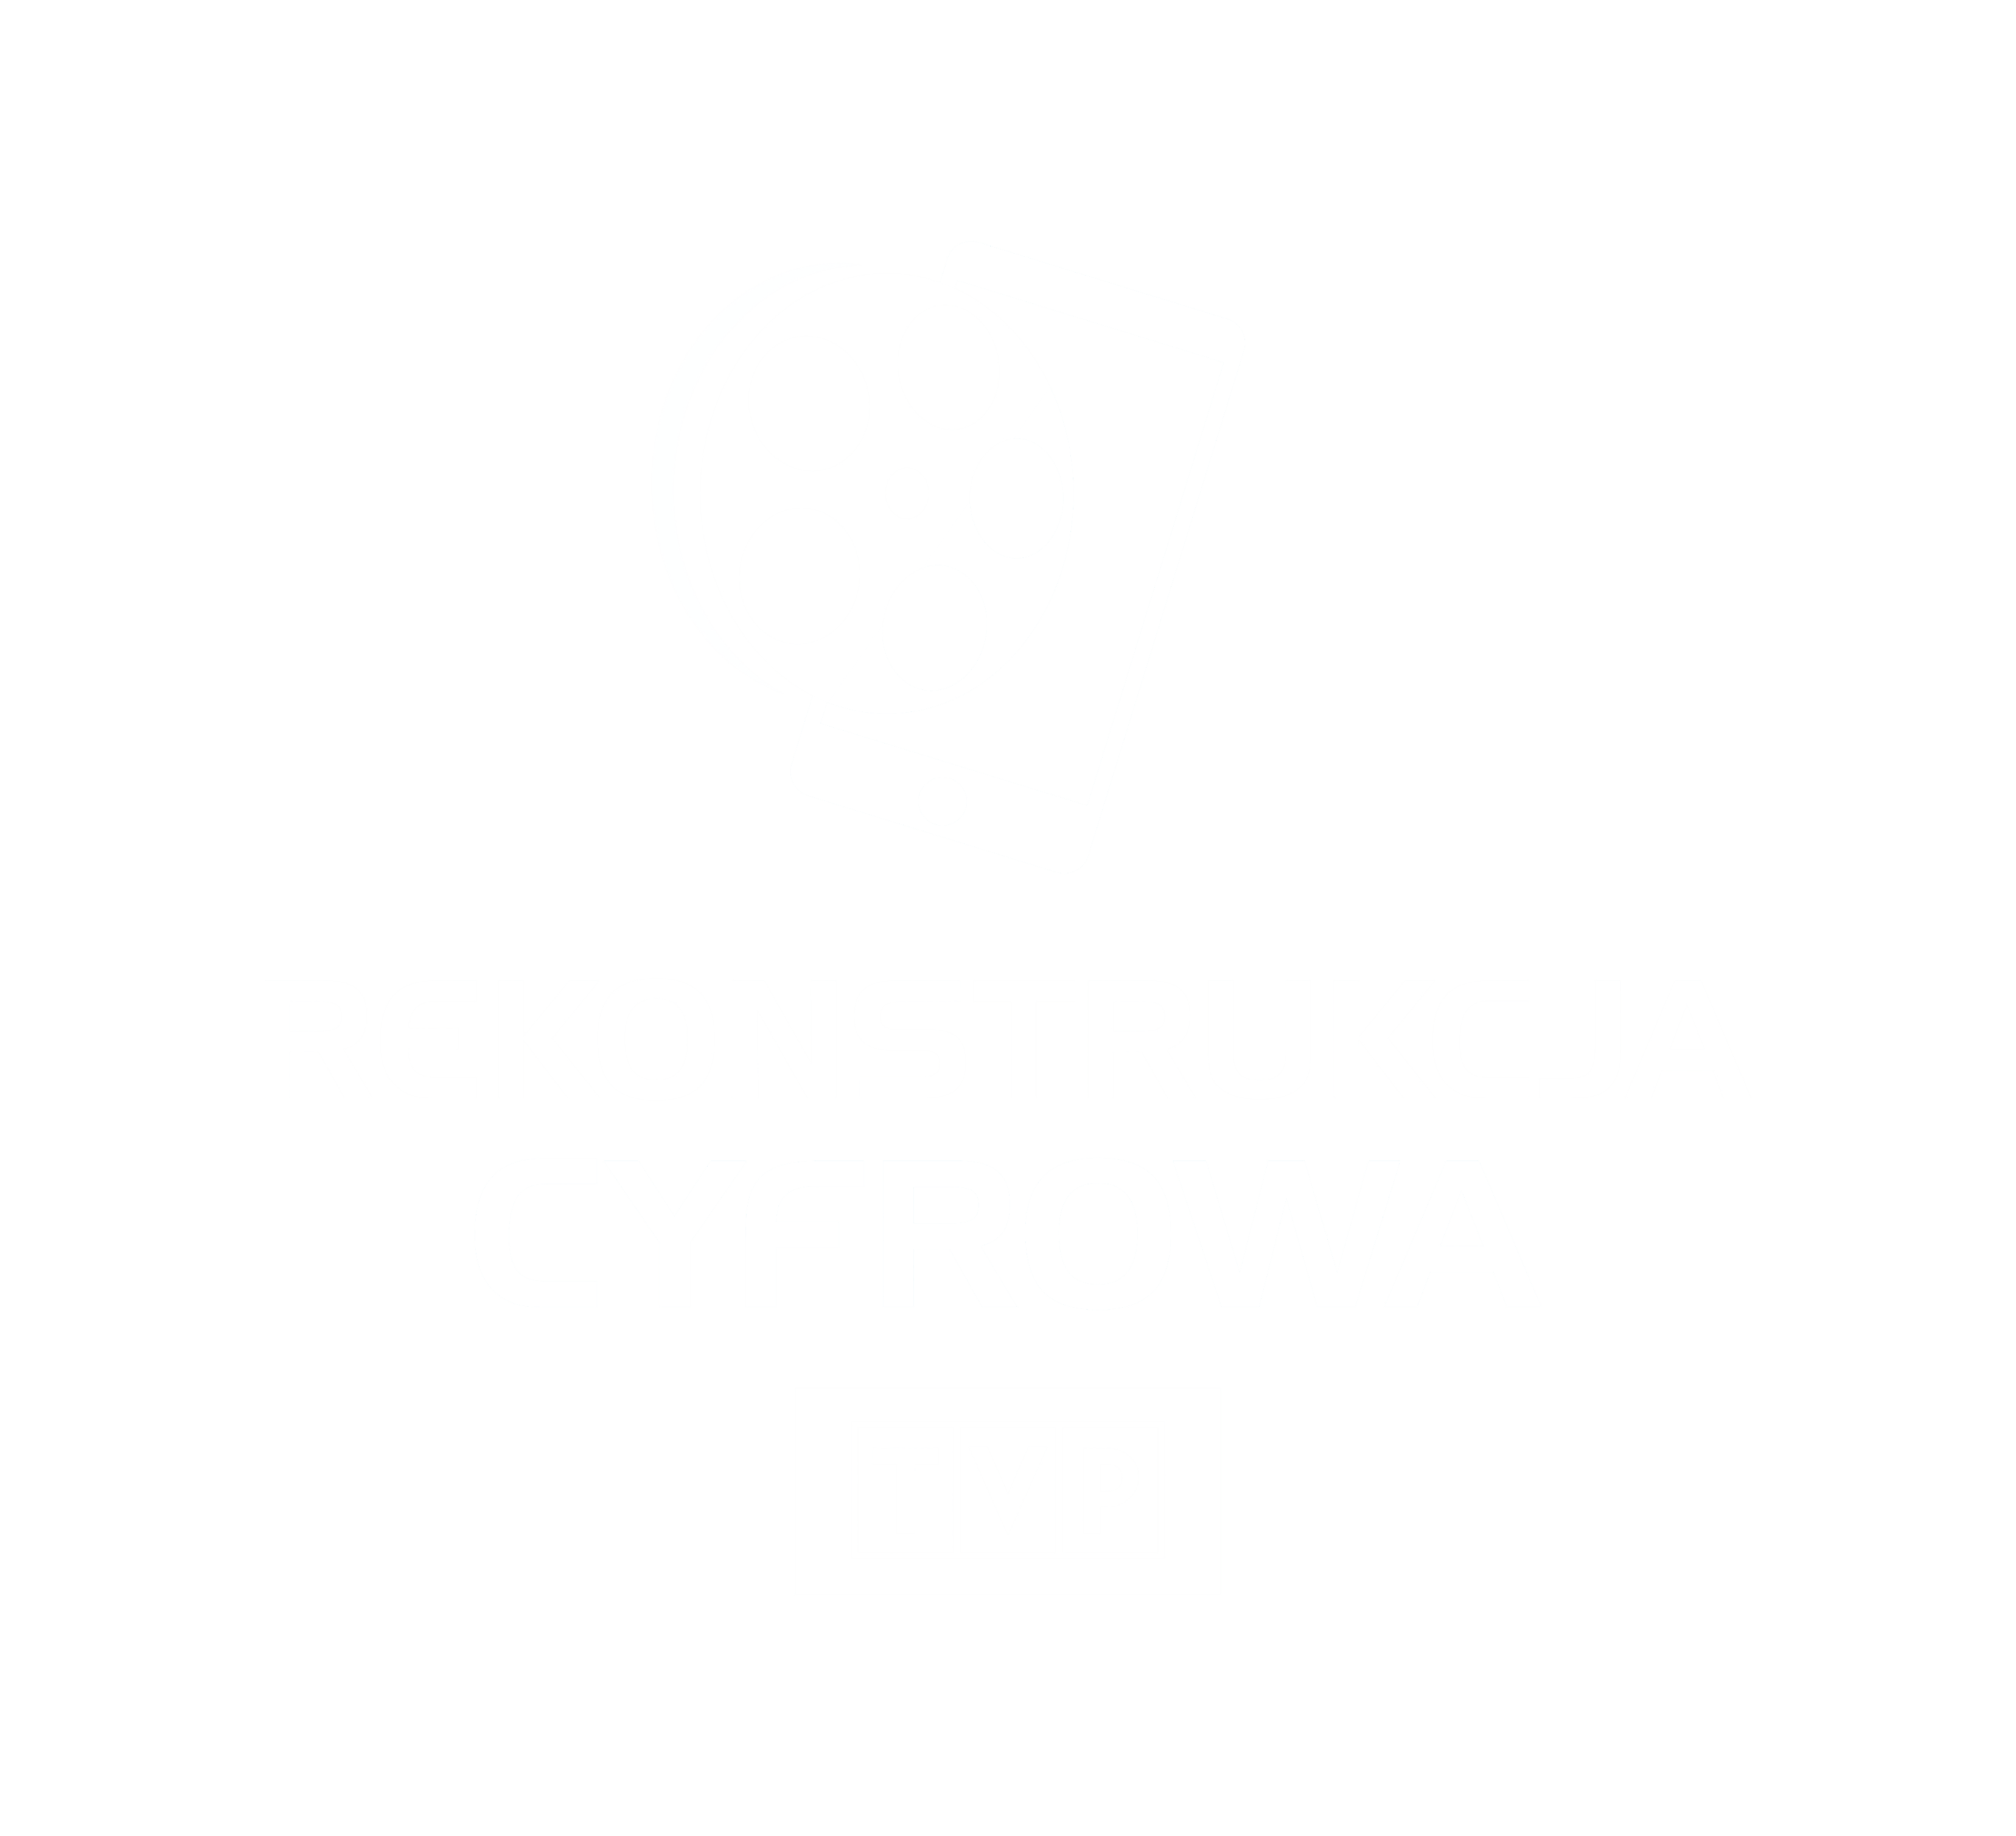 TVP Rekonstrukcja_ENG